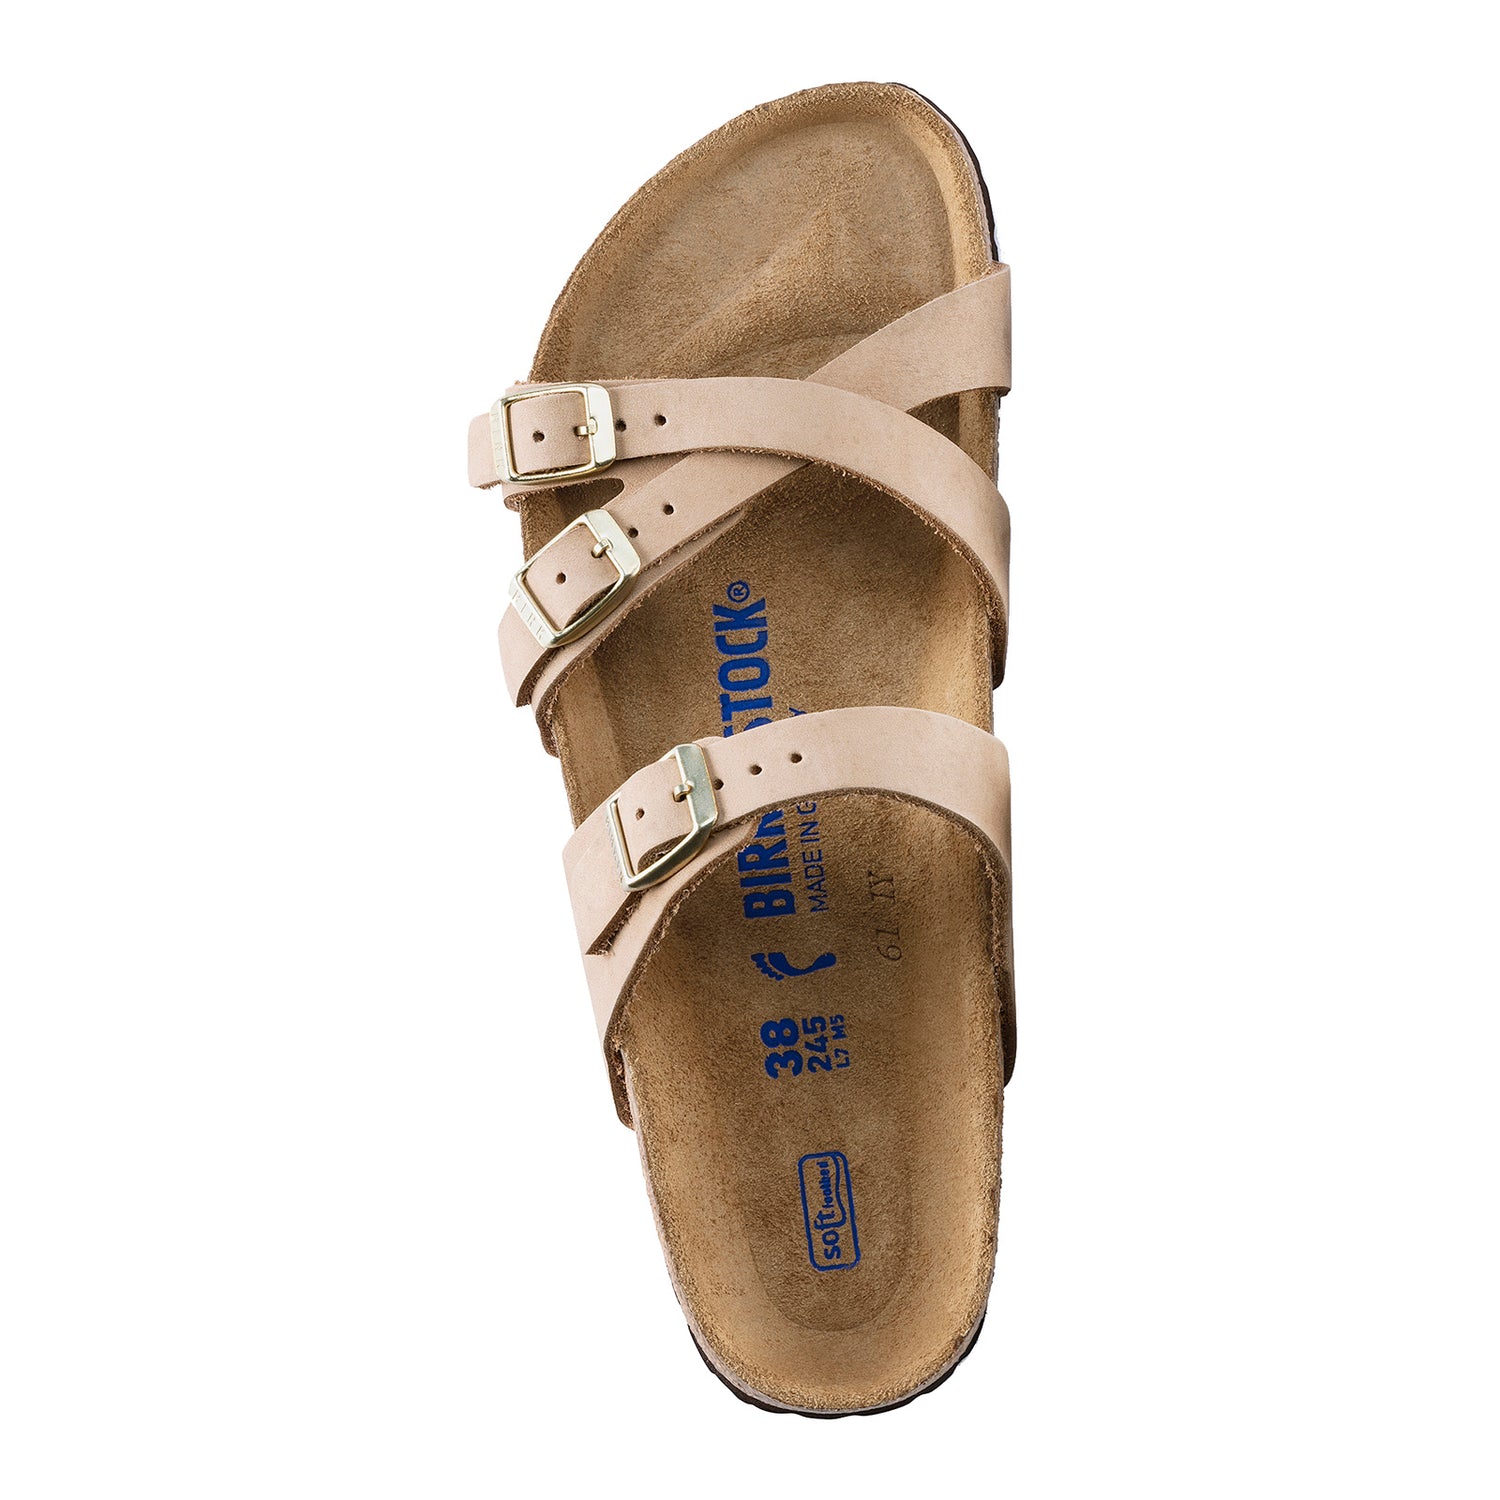 Peltz Shoes  Women's Birkenstock Franca Soft Footbed Sandal - Narrow Width SANDCASTLE 1022 973 N